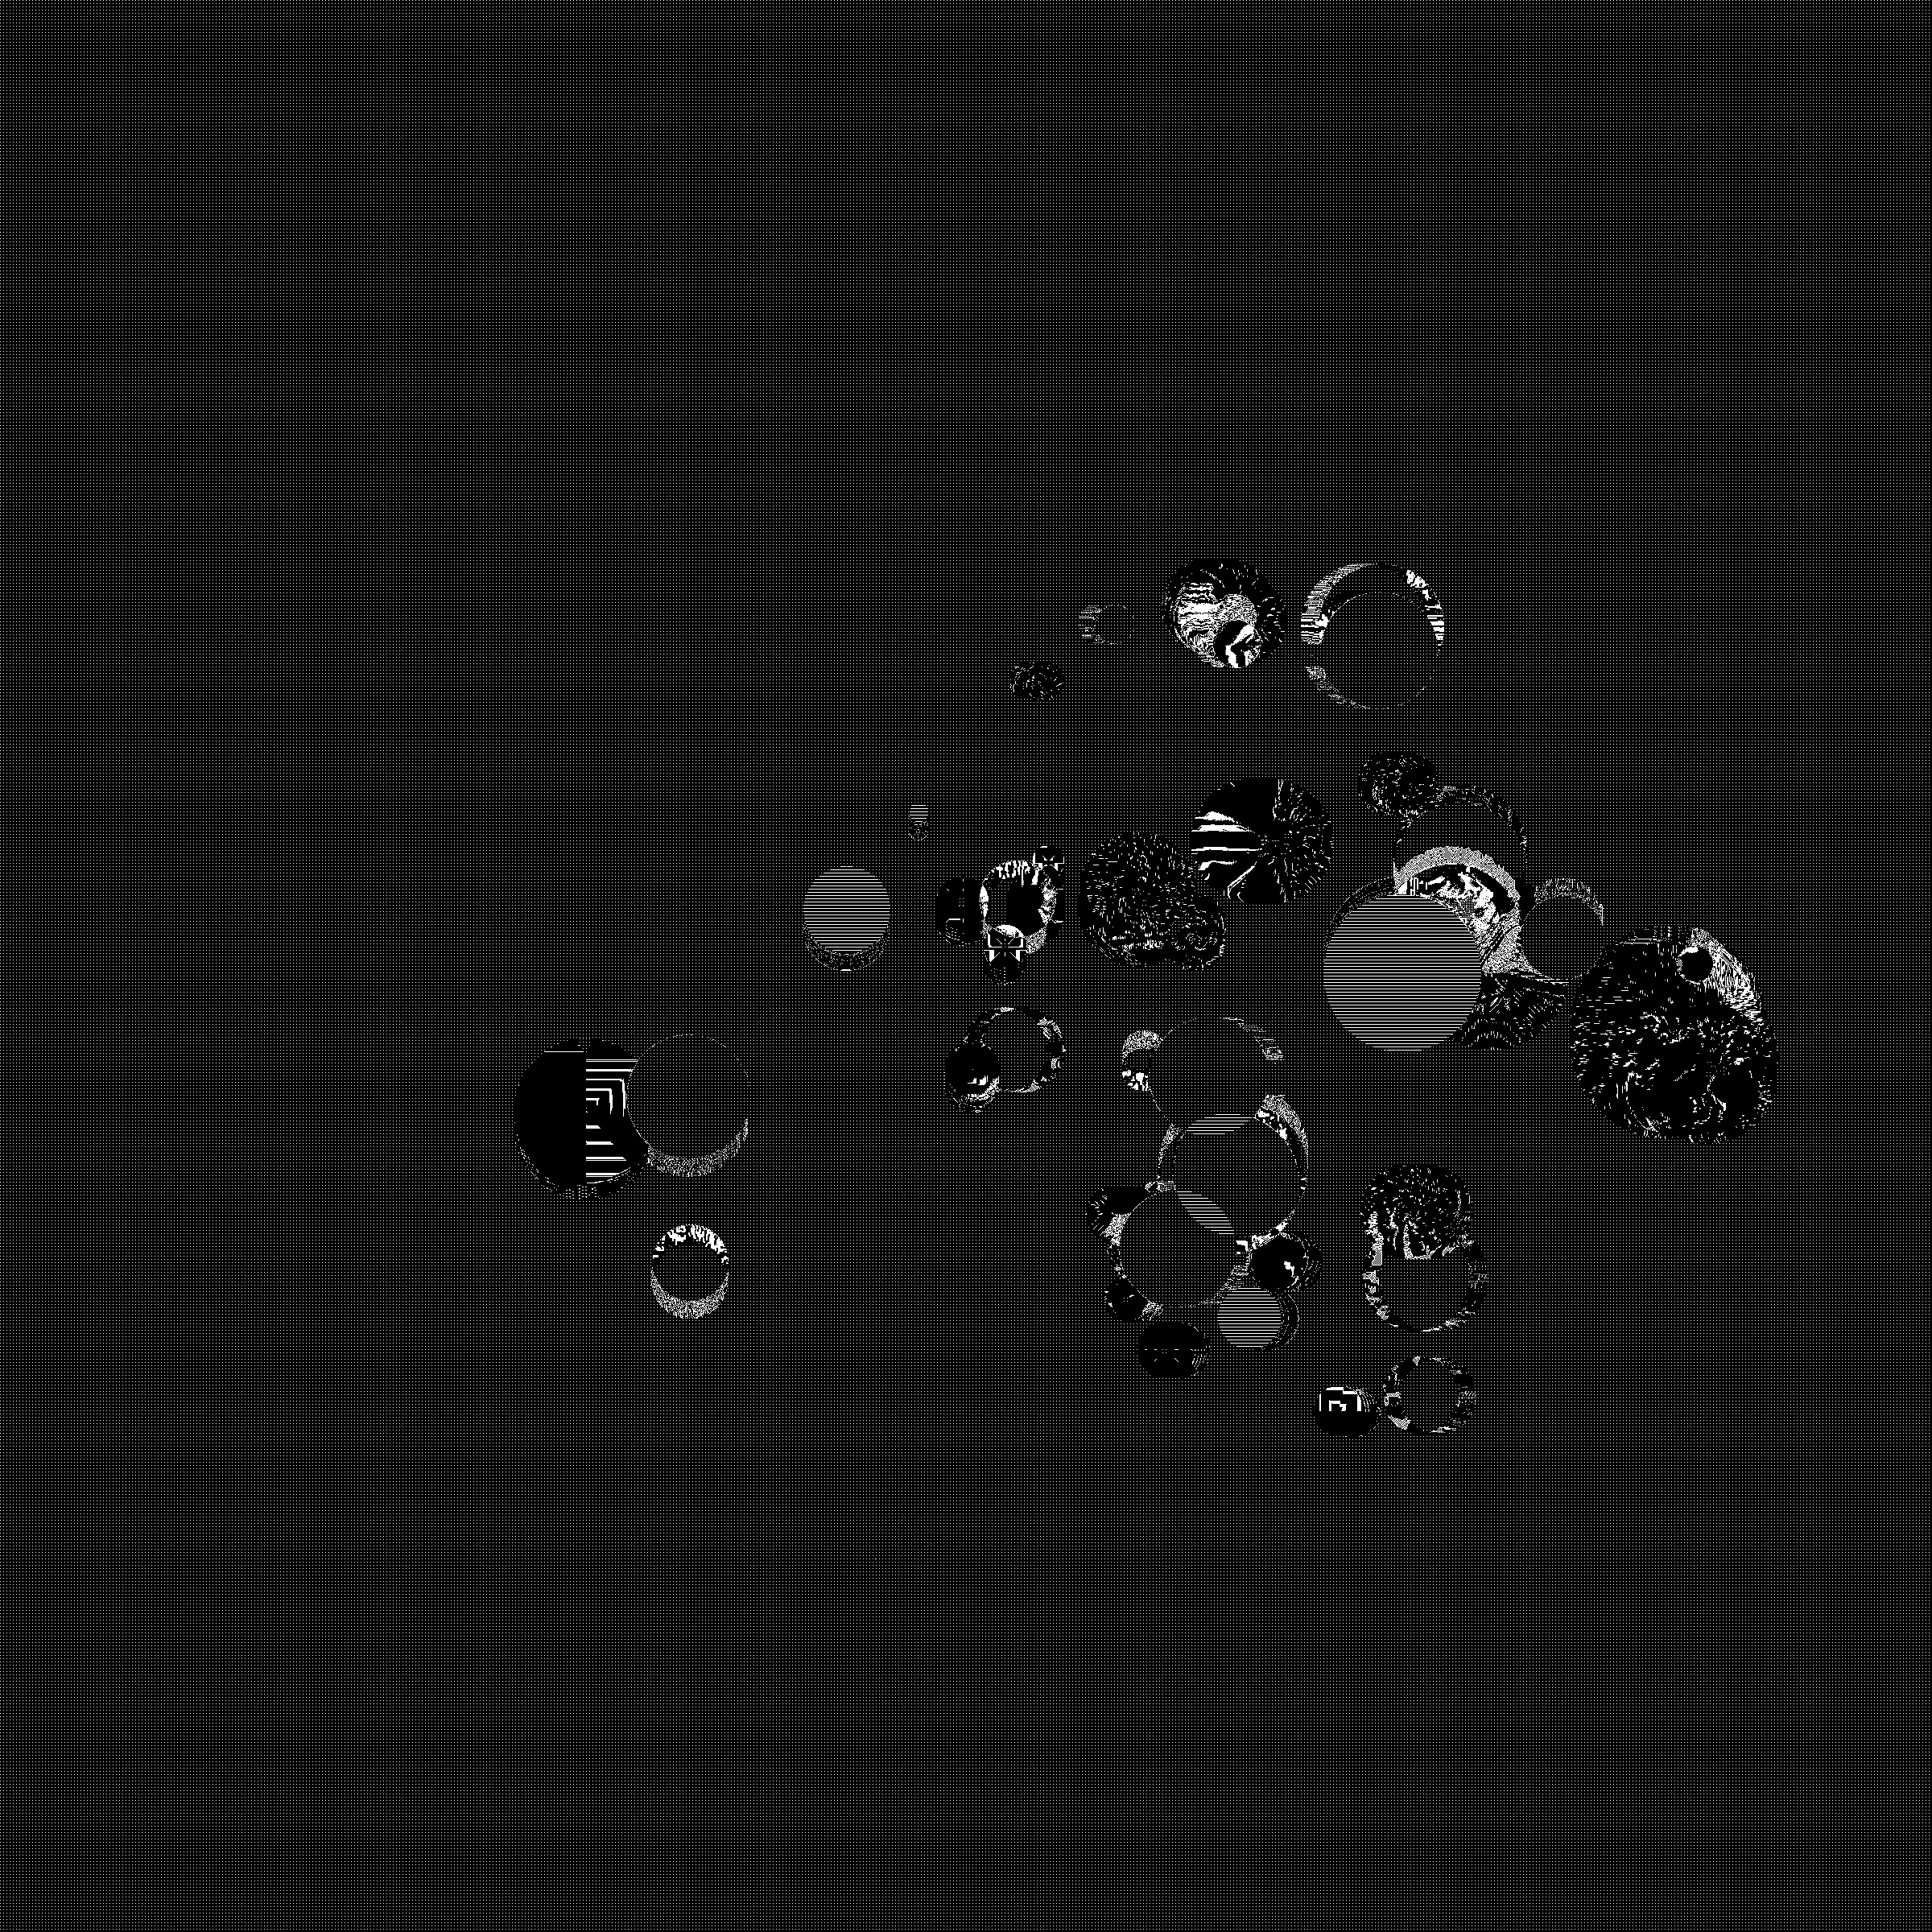 Event Horizon #86